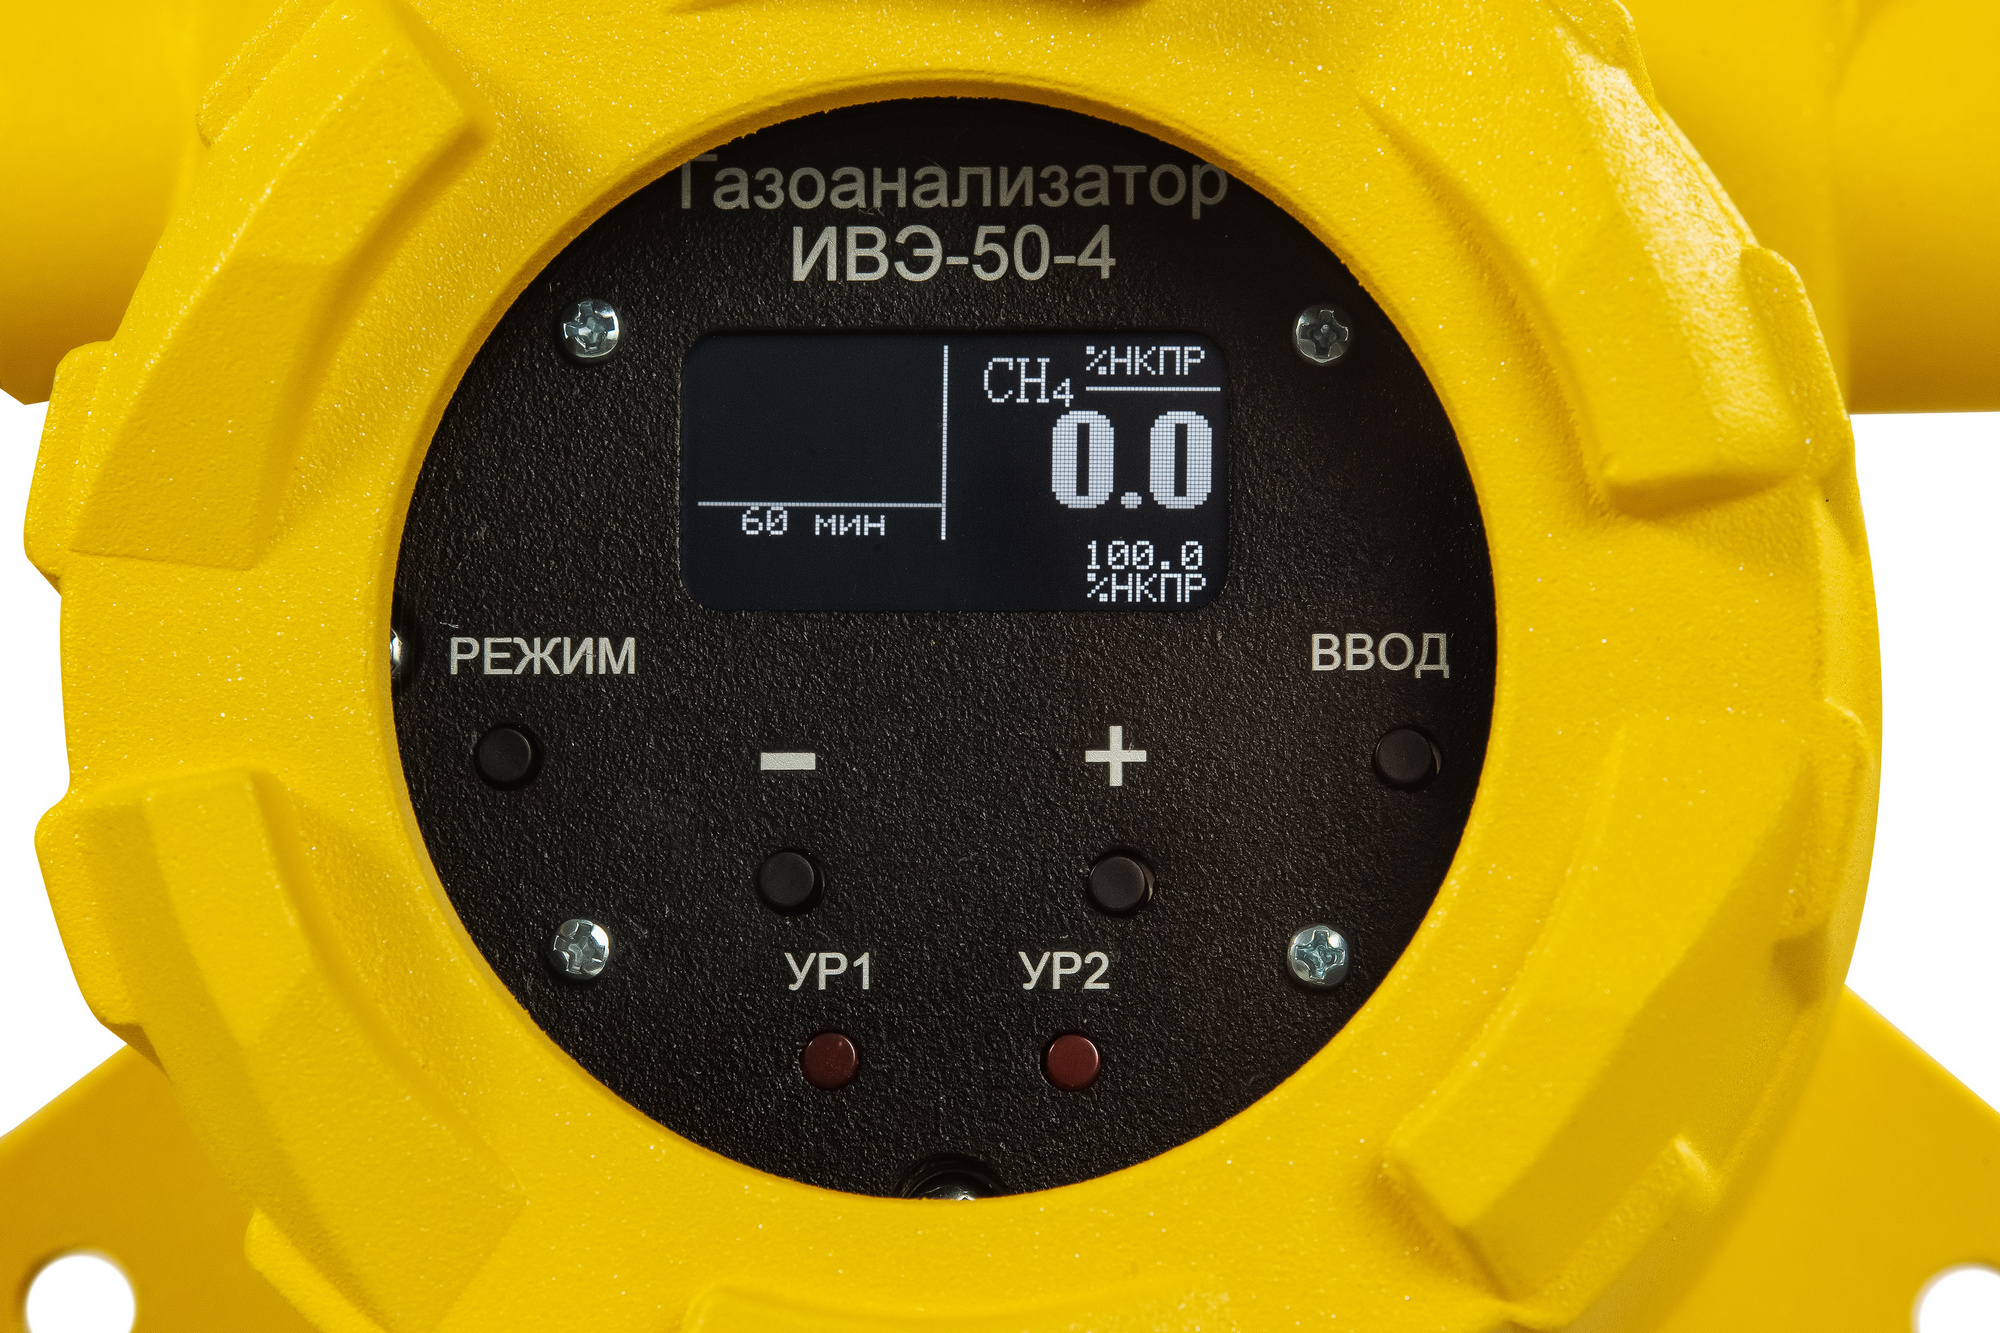 Газоанализатор ИВЭ-50-4.1 (4.2)